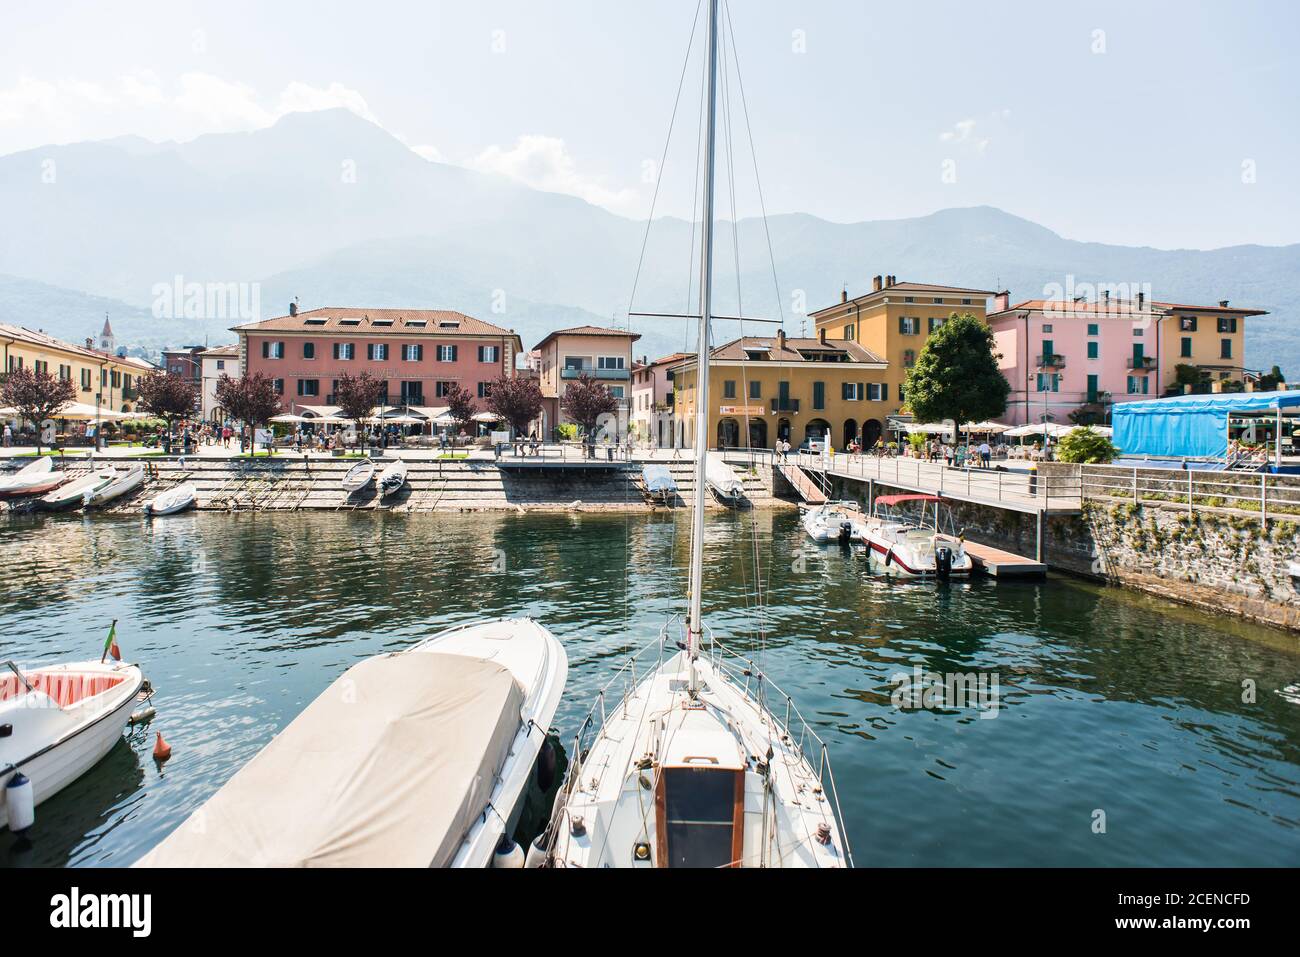 Comer See. Italien - 21. Juli 2019: Segelboote und Boote im kleinen Hafen von Colico City. Comer See in Italien. Hotels und Gebäude am Ufer des Comer Sees Stockfoto